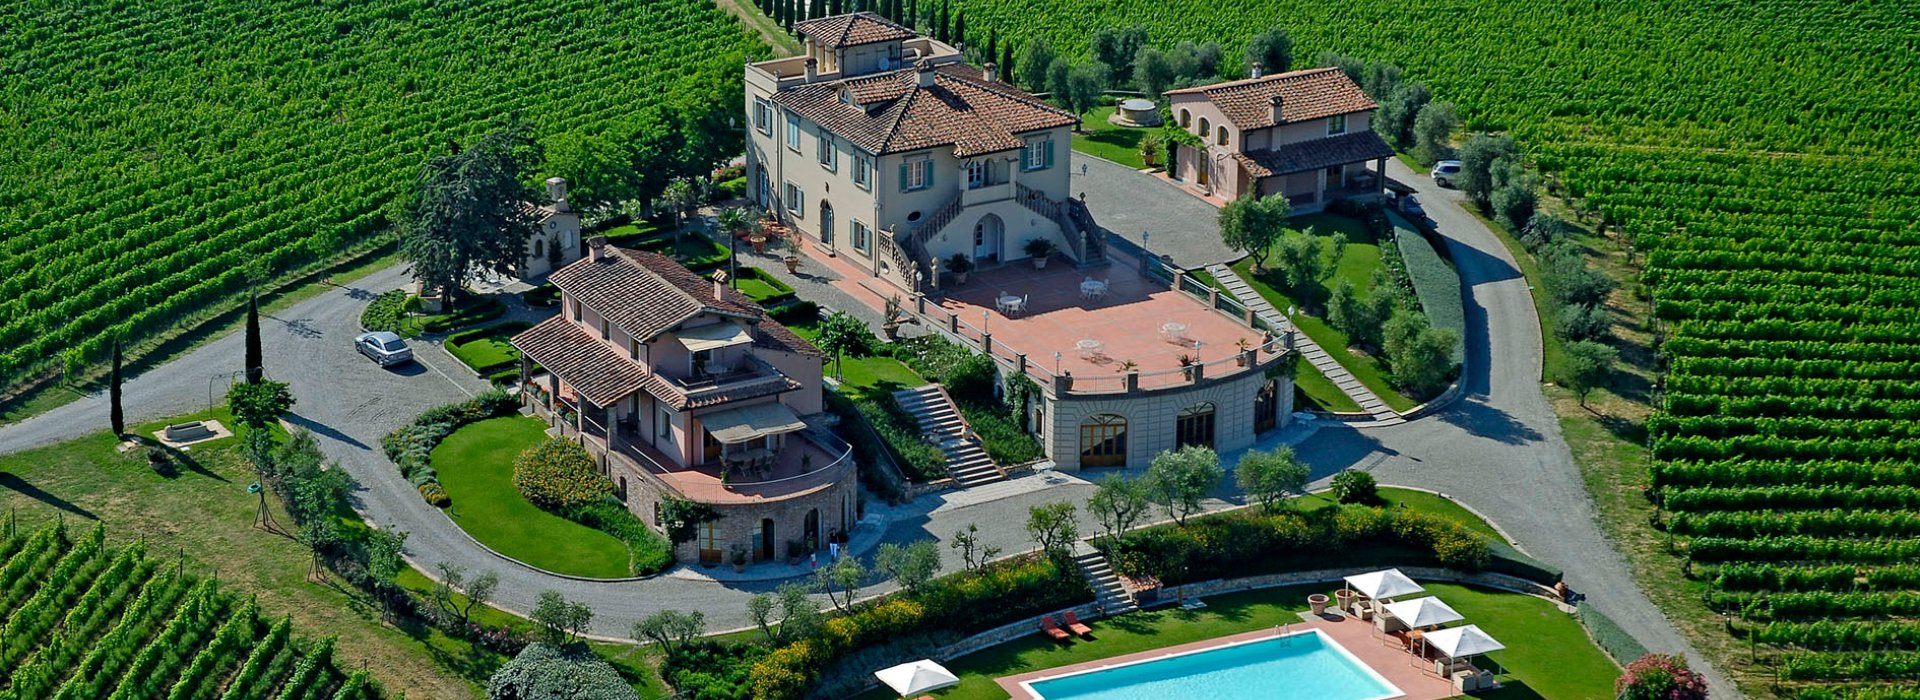 vacanza in Toscana per la primavera 2023 a Poggio al casone resort un agriturismo di charme situato nella campagna pisana